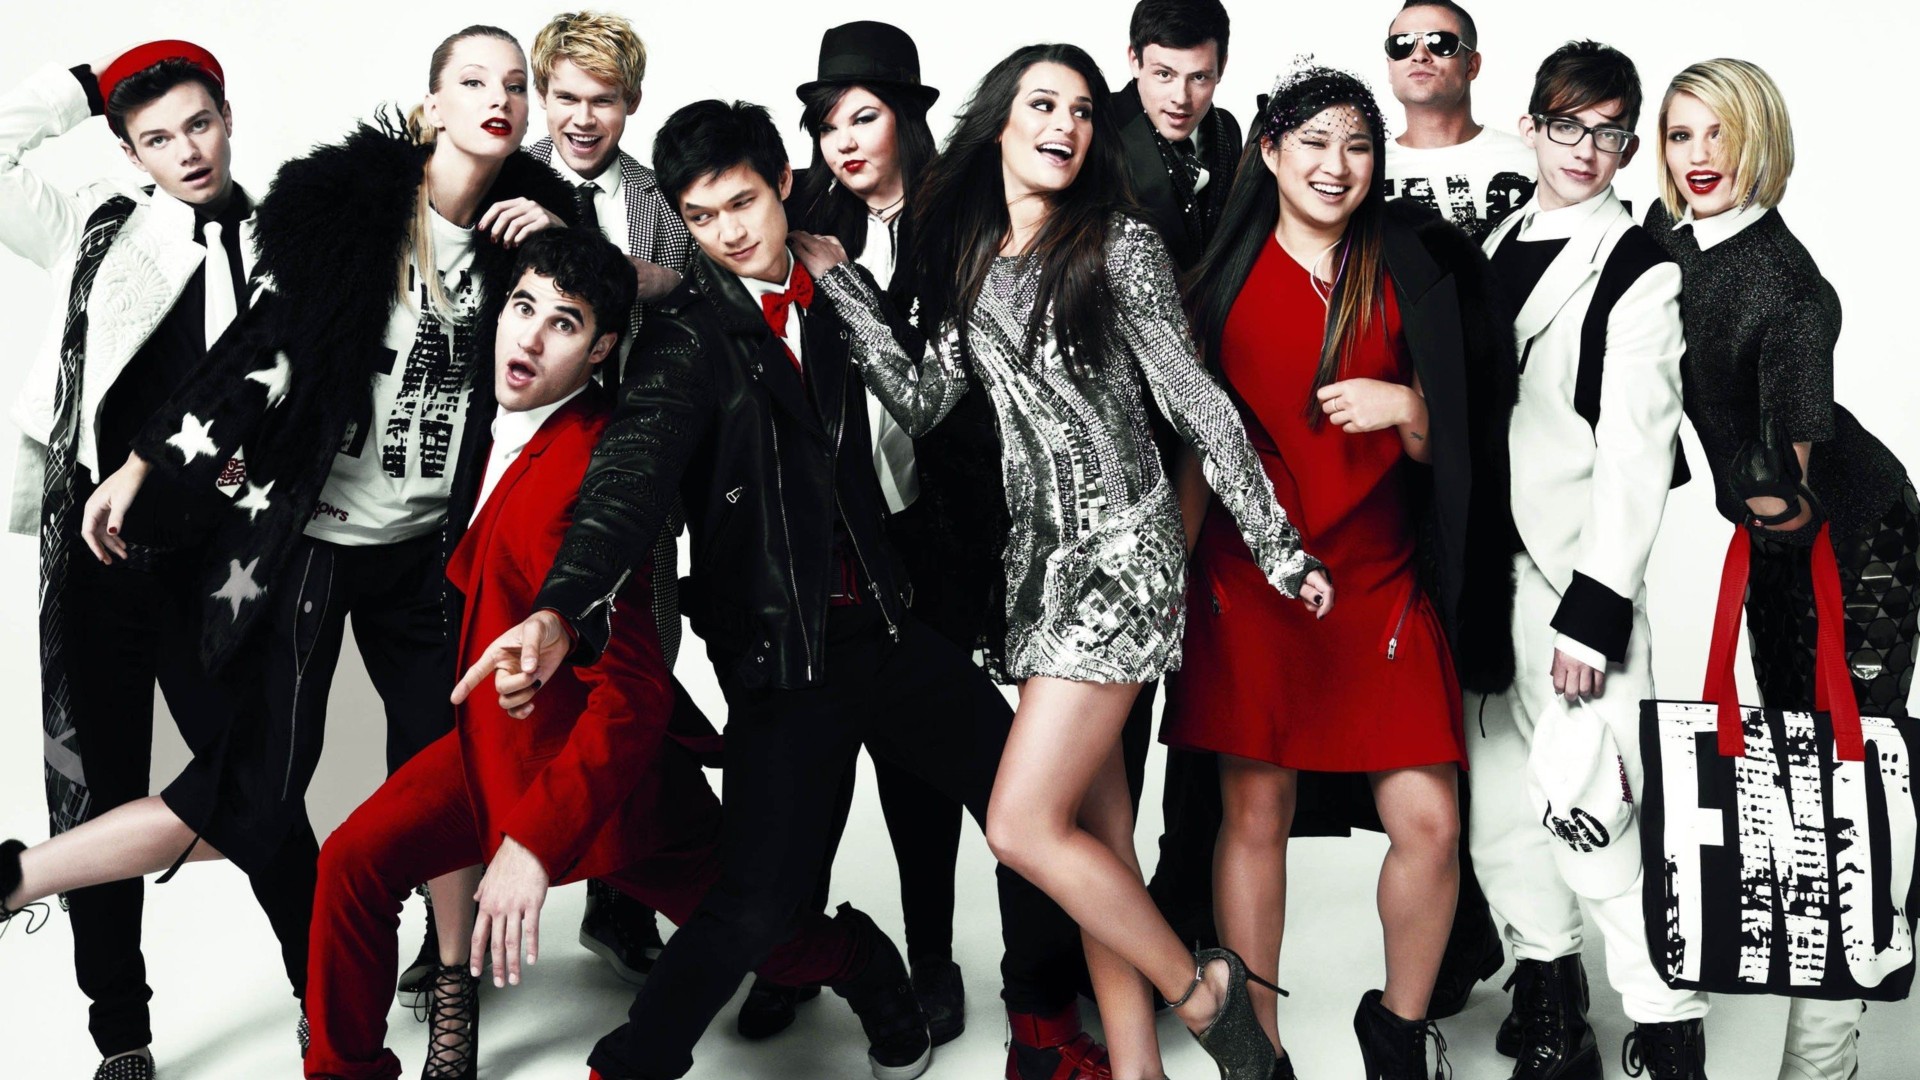 La Isla Bonita (Glee Cast Version Featuring Ricky Martin) av Glee Cast 